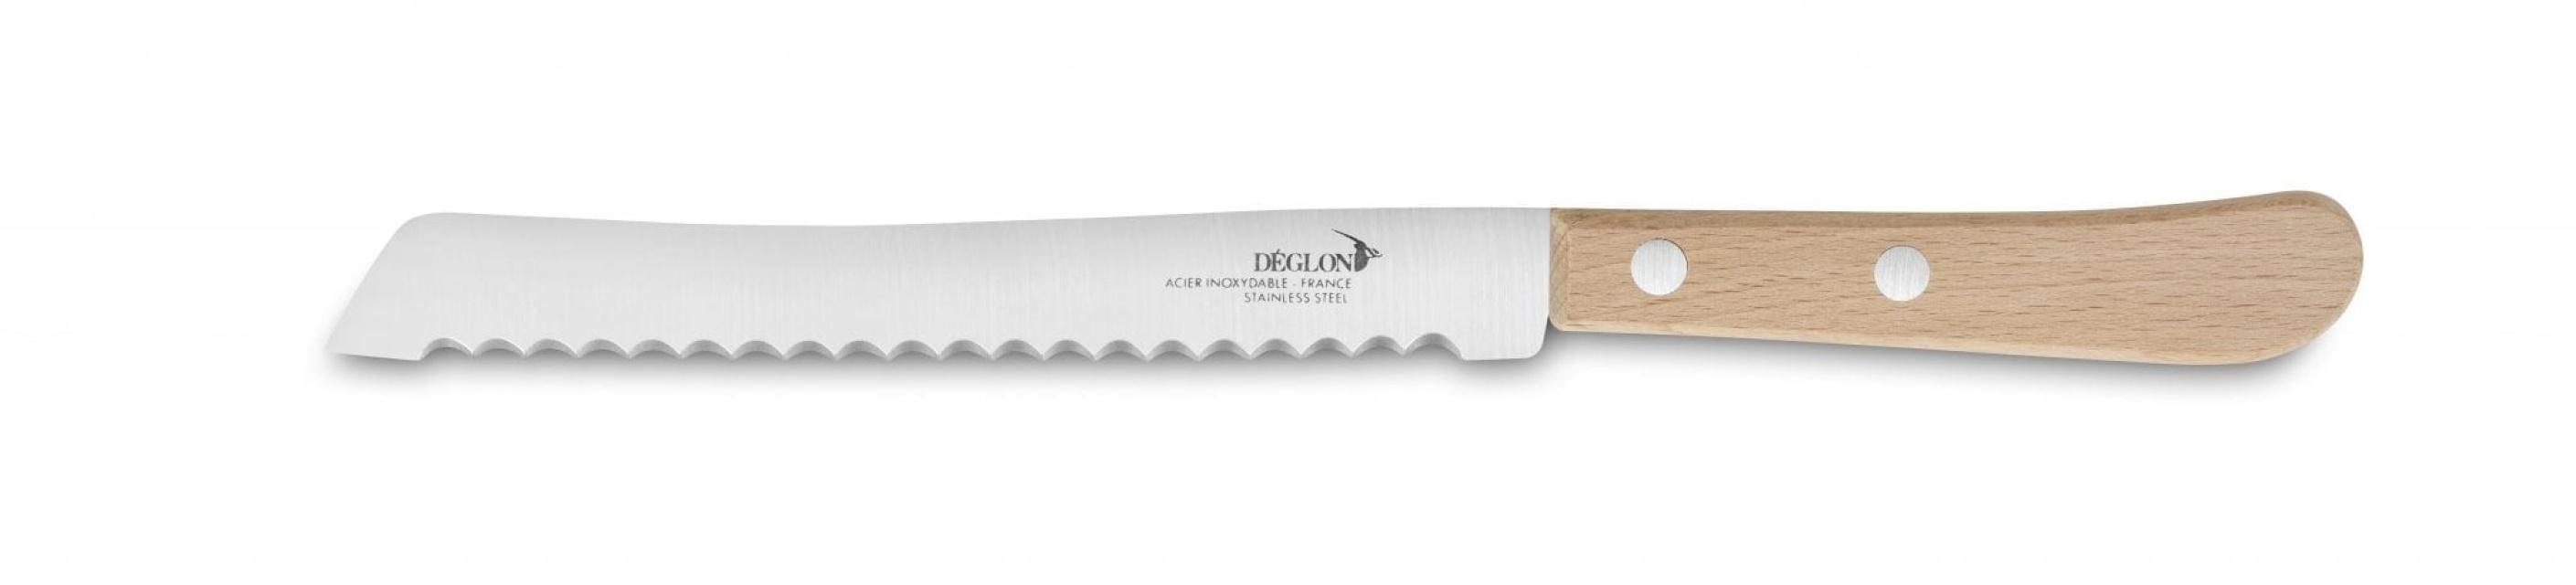 Bread knife, 19 cm - Déglon